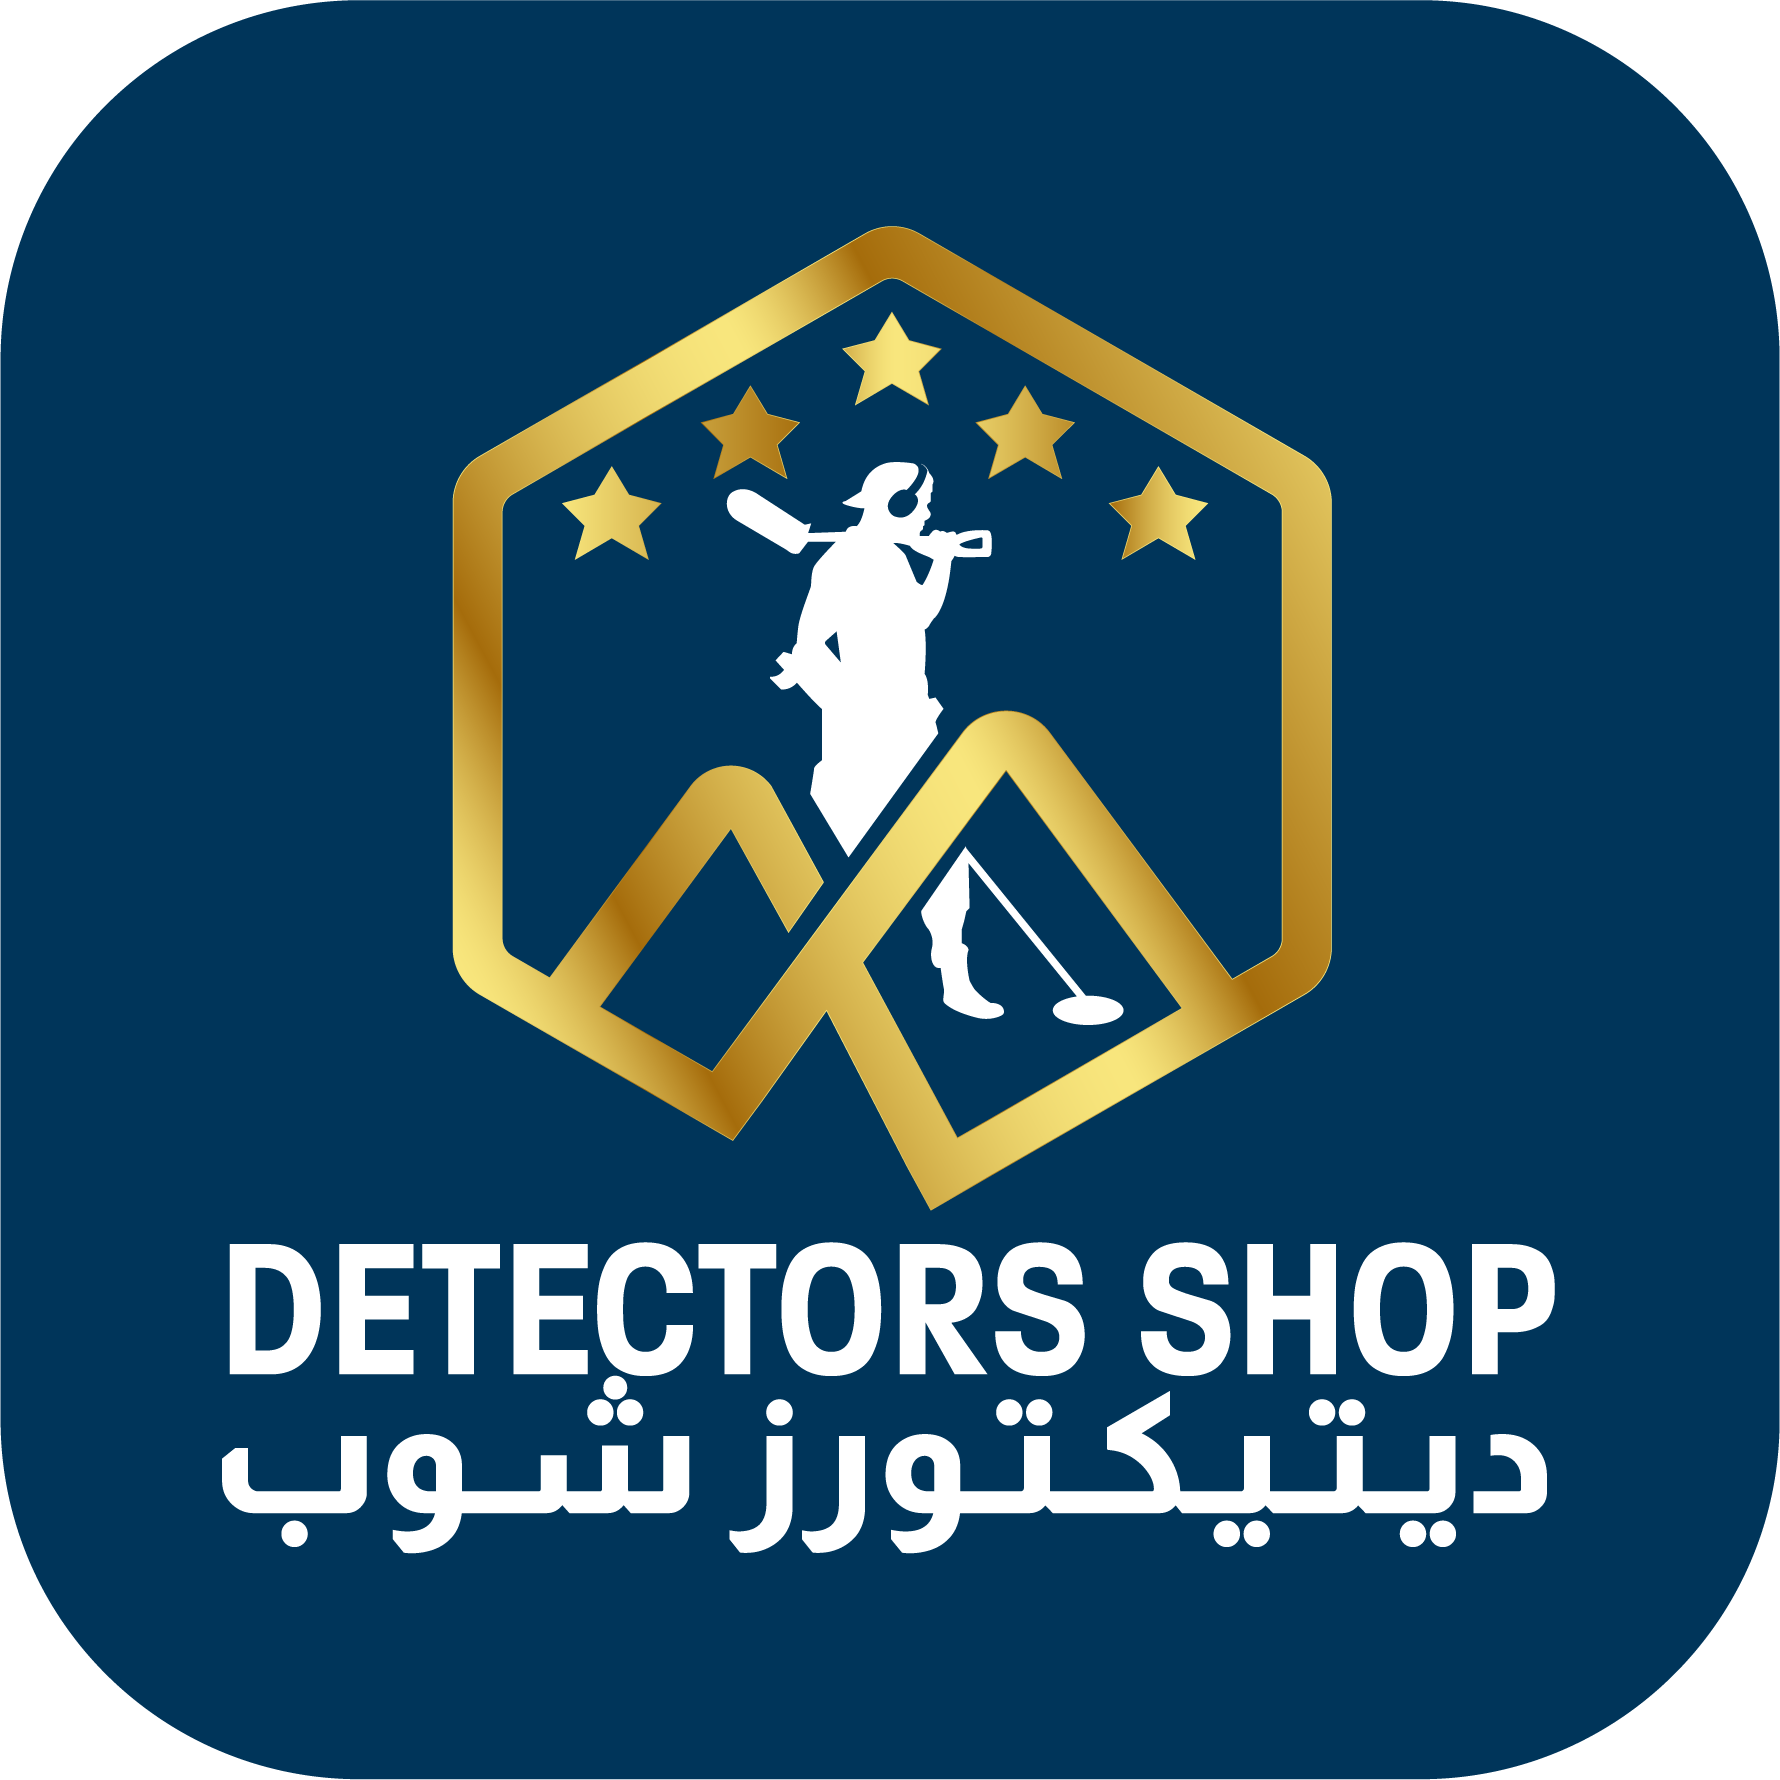 Detectors Shop General Trading